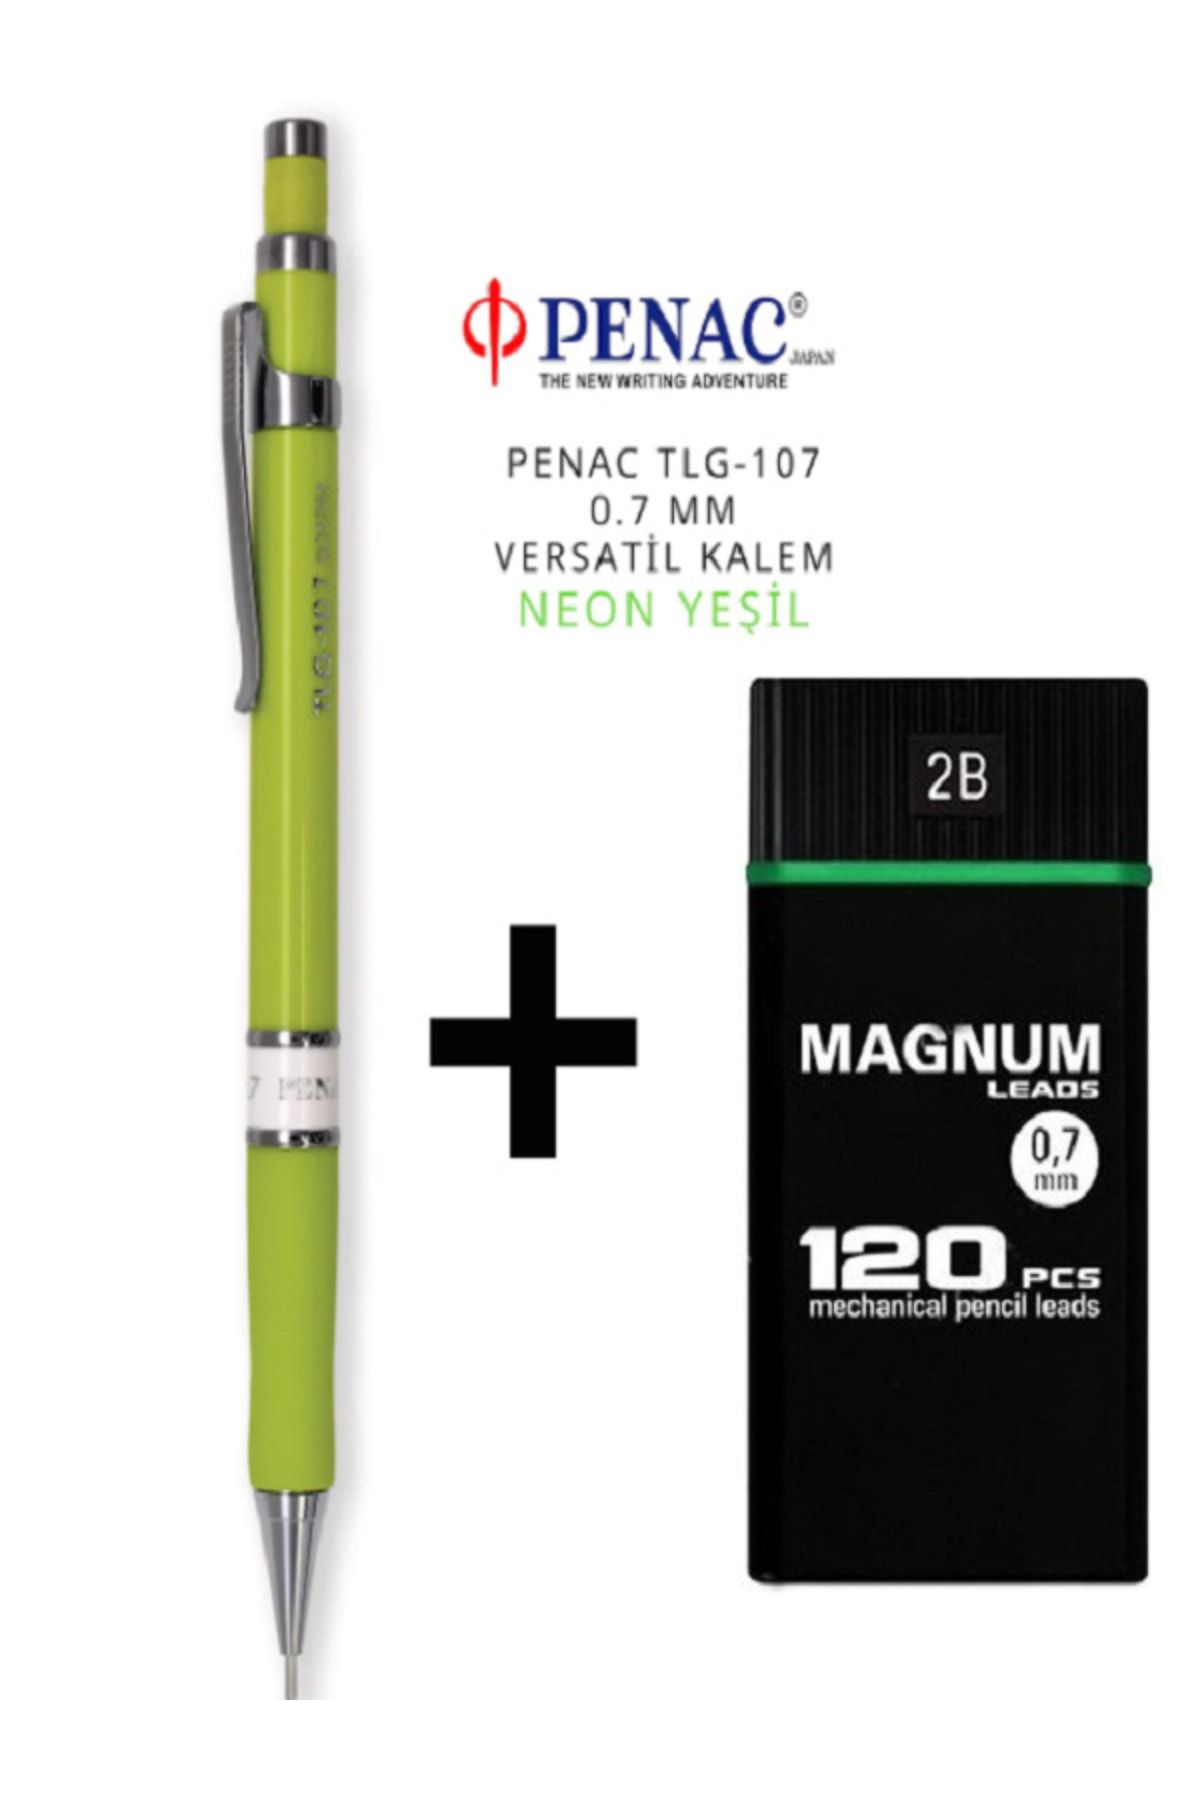 PENAC Versatil Kalem 0.7 + Magnum 120 Li Uç